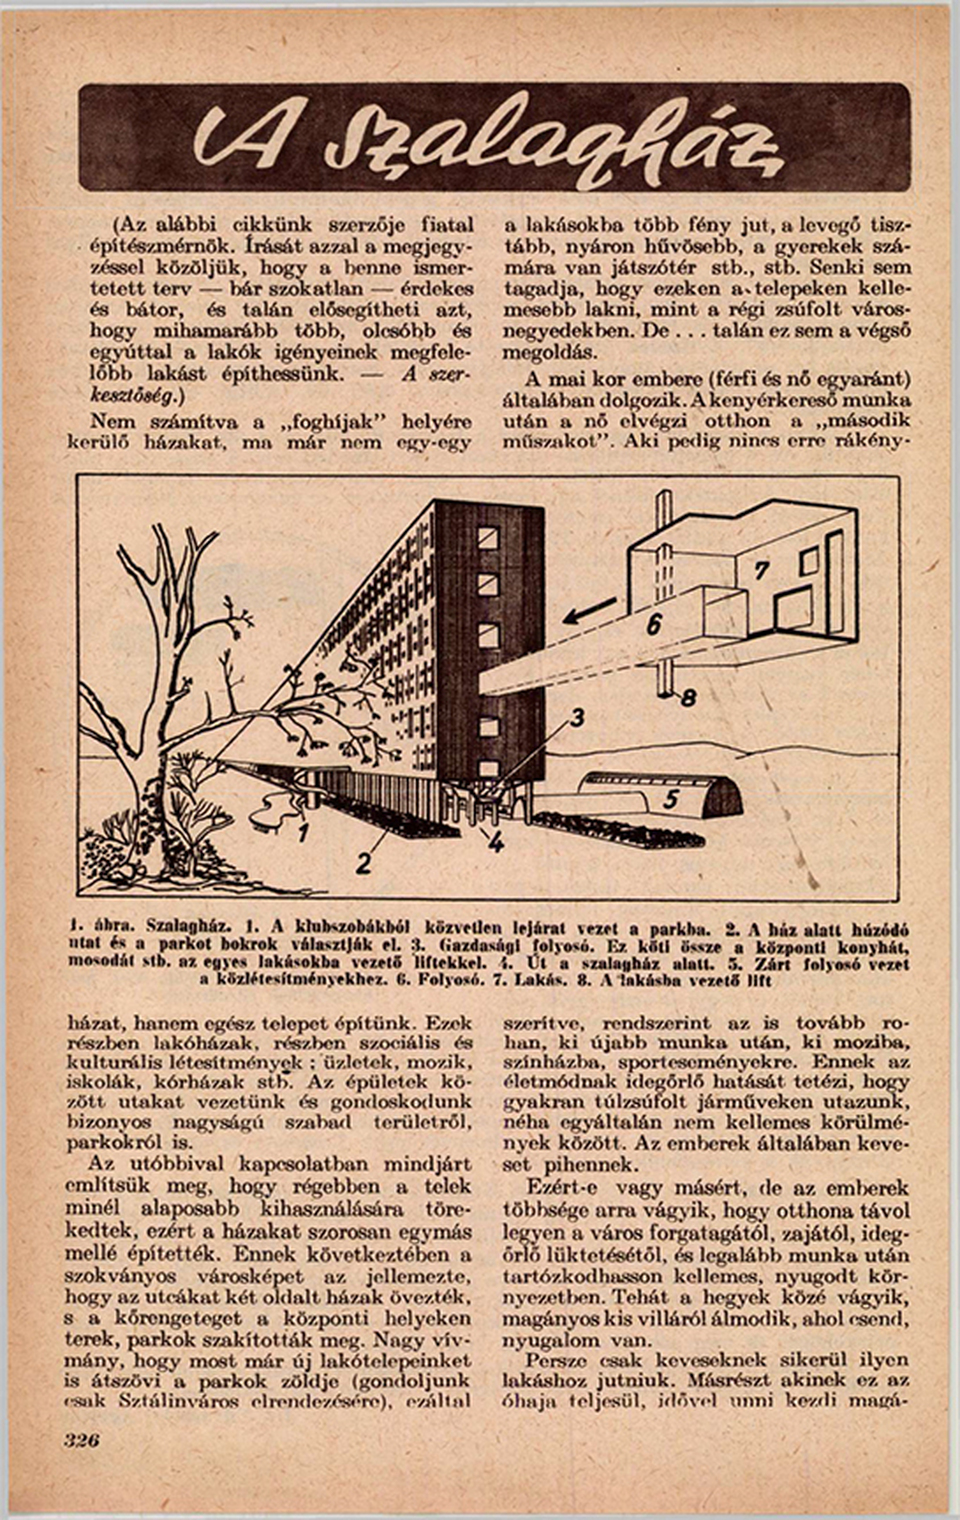 Zalotay legkorábban publikált cikke a szalagház koncepcióról az Élet és Tudomány 1959. márciusi számában.